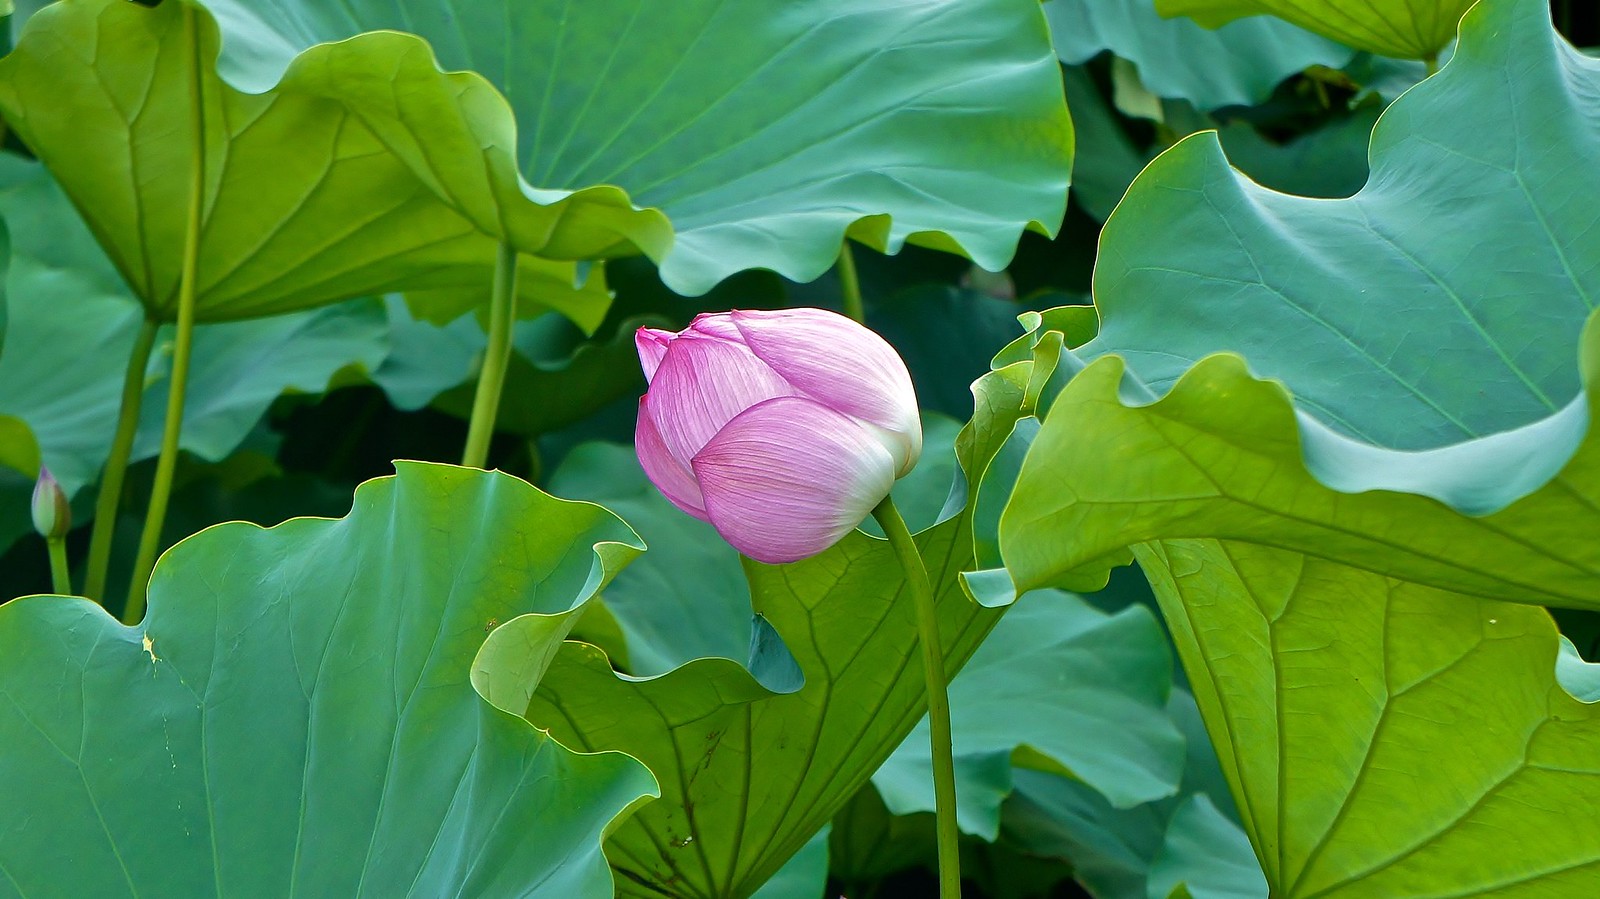 Lotus FLowers in Ueno Park